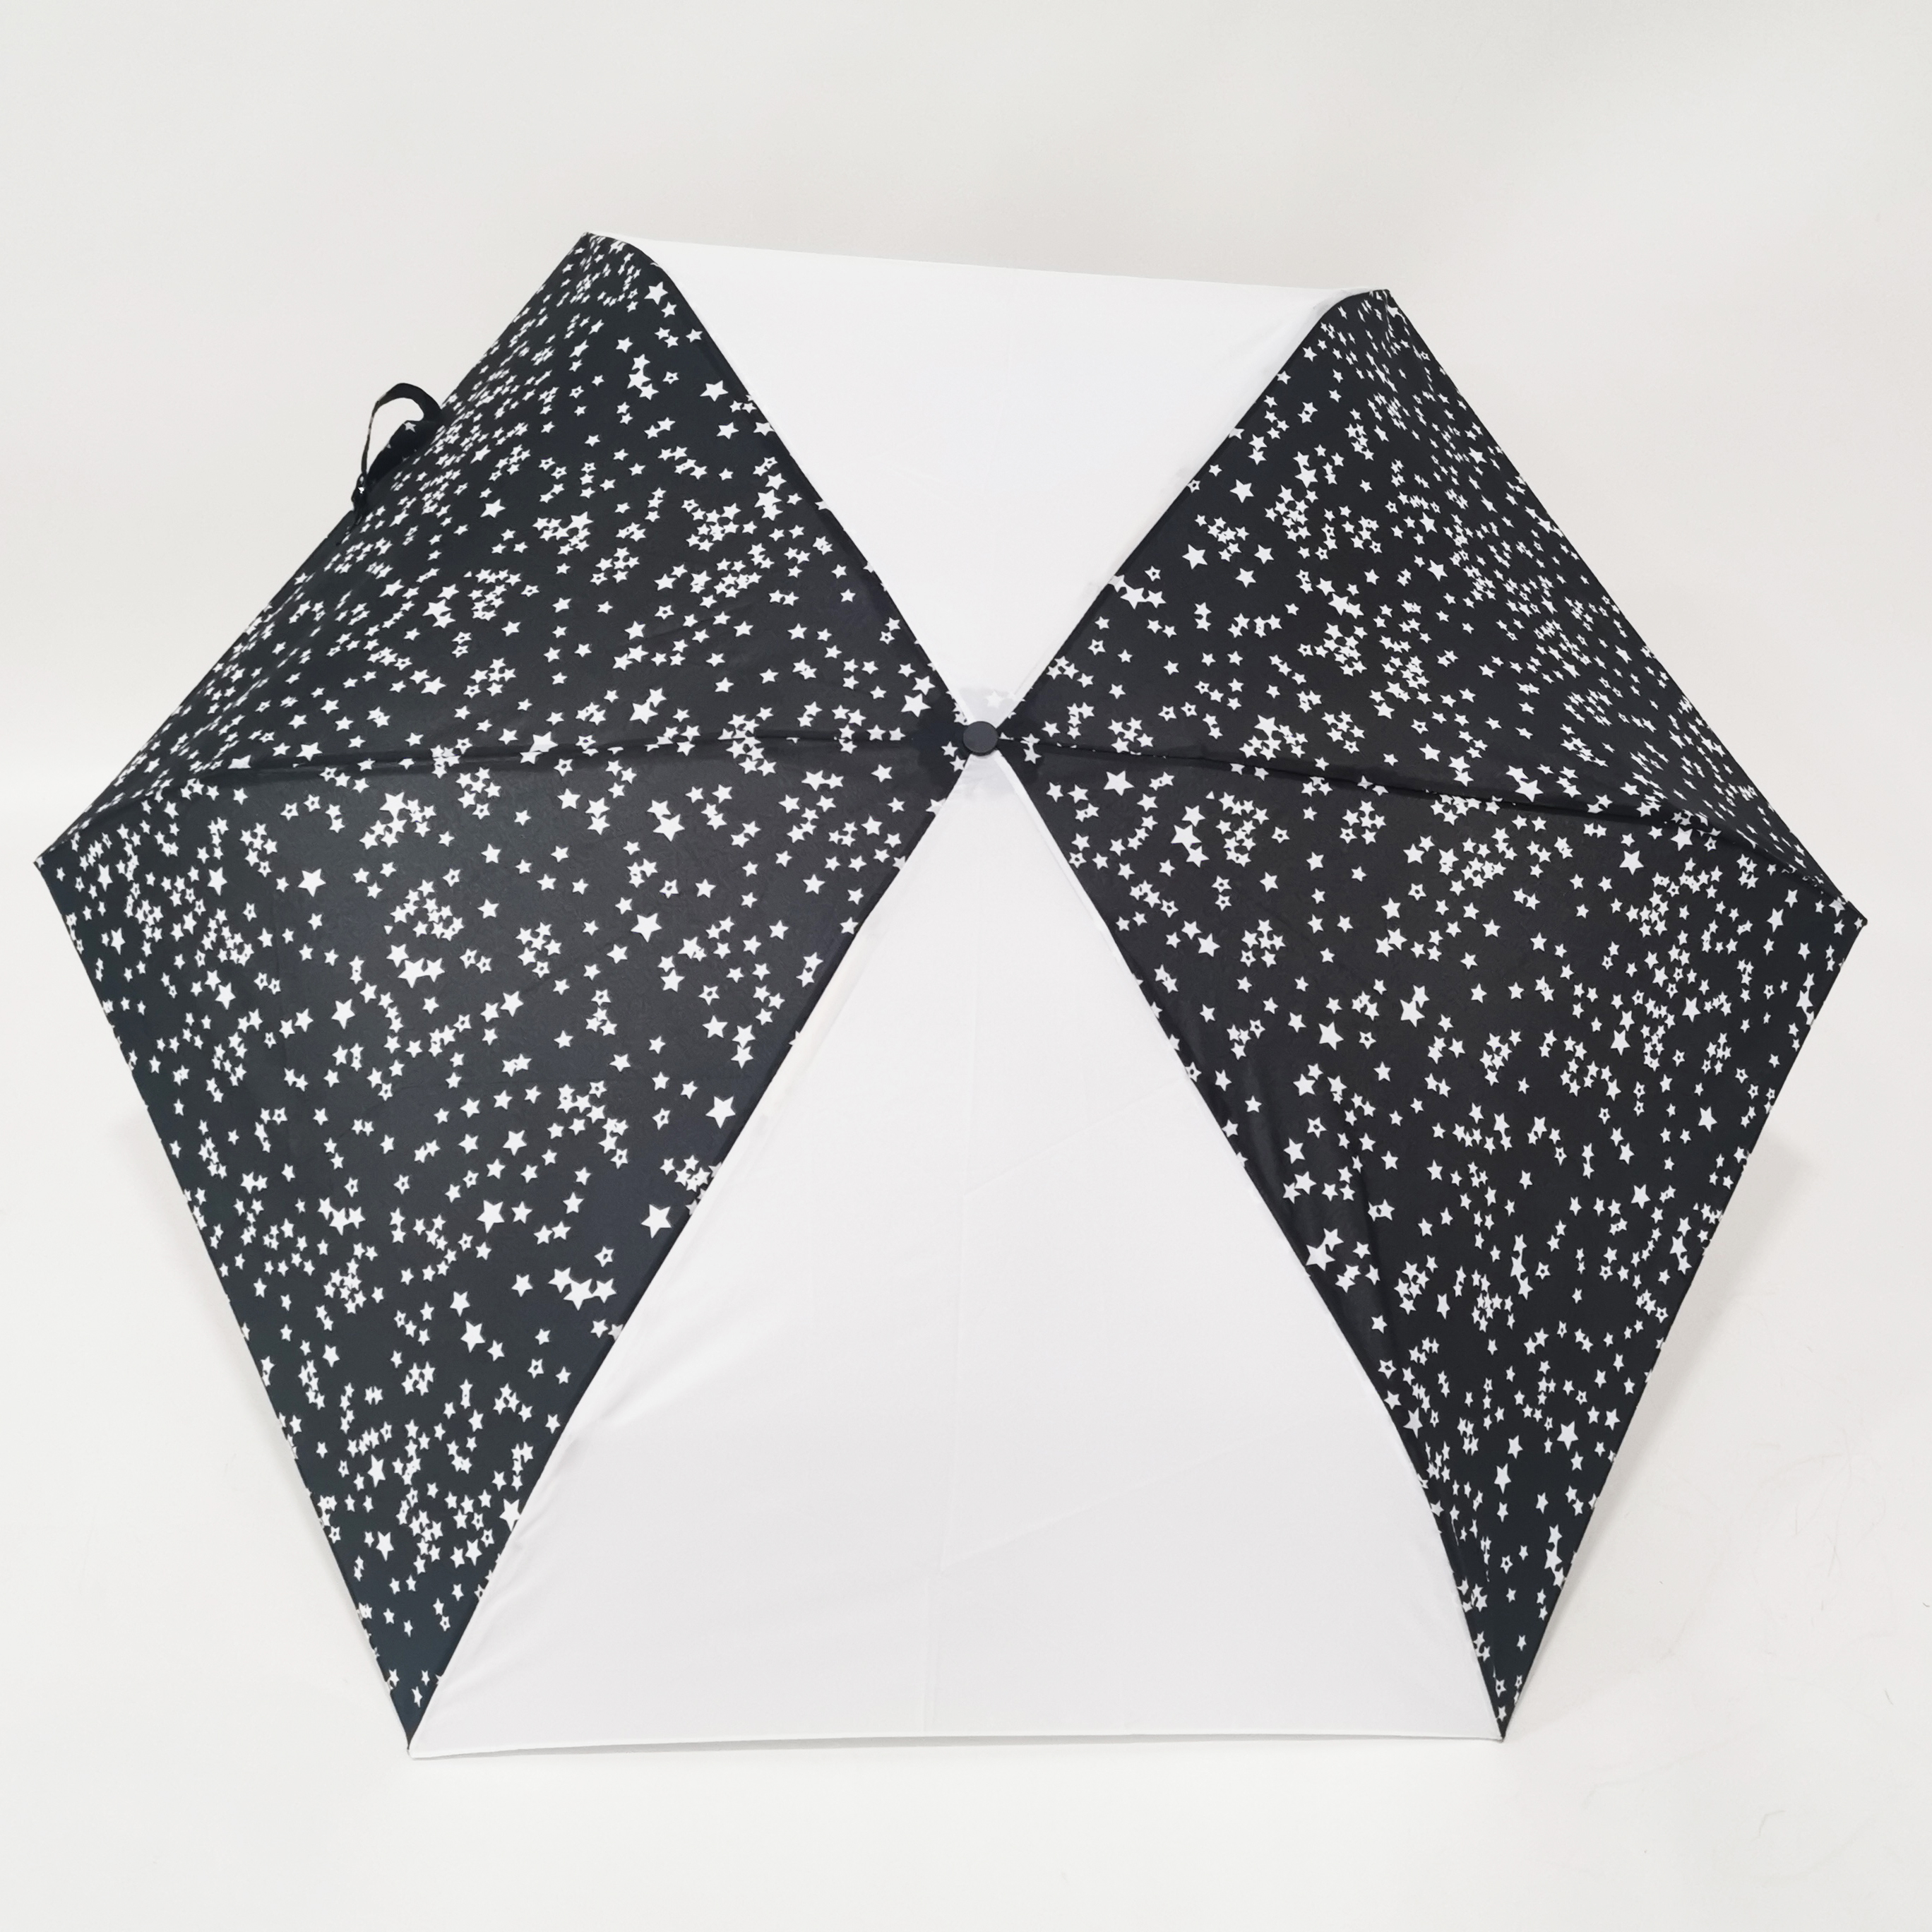 https://www.hodaumbrella.com/just-205g-an-tres-folding-umbrella-product/